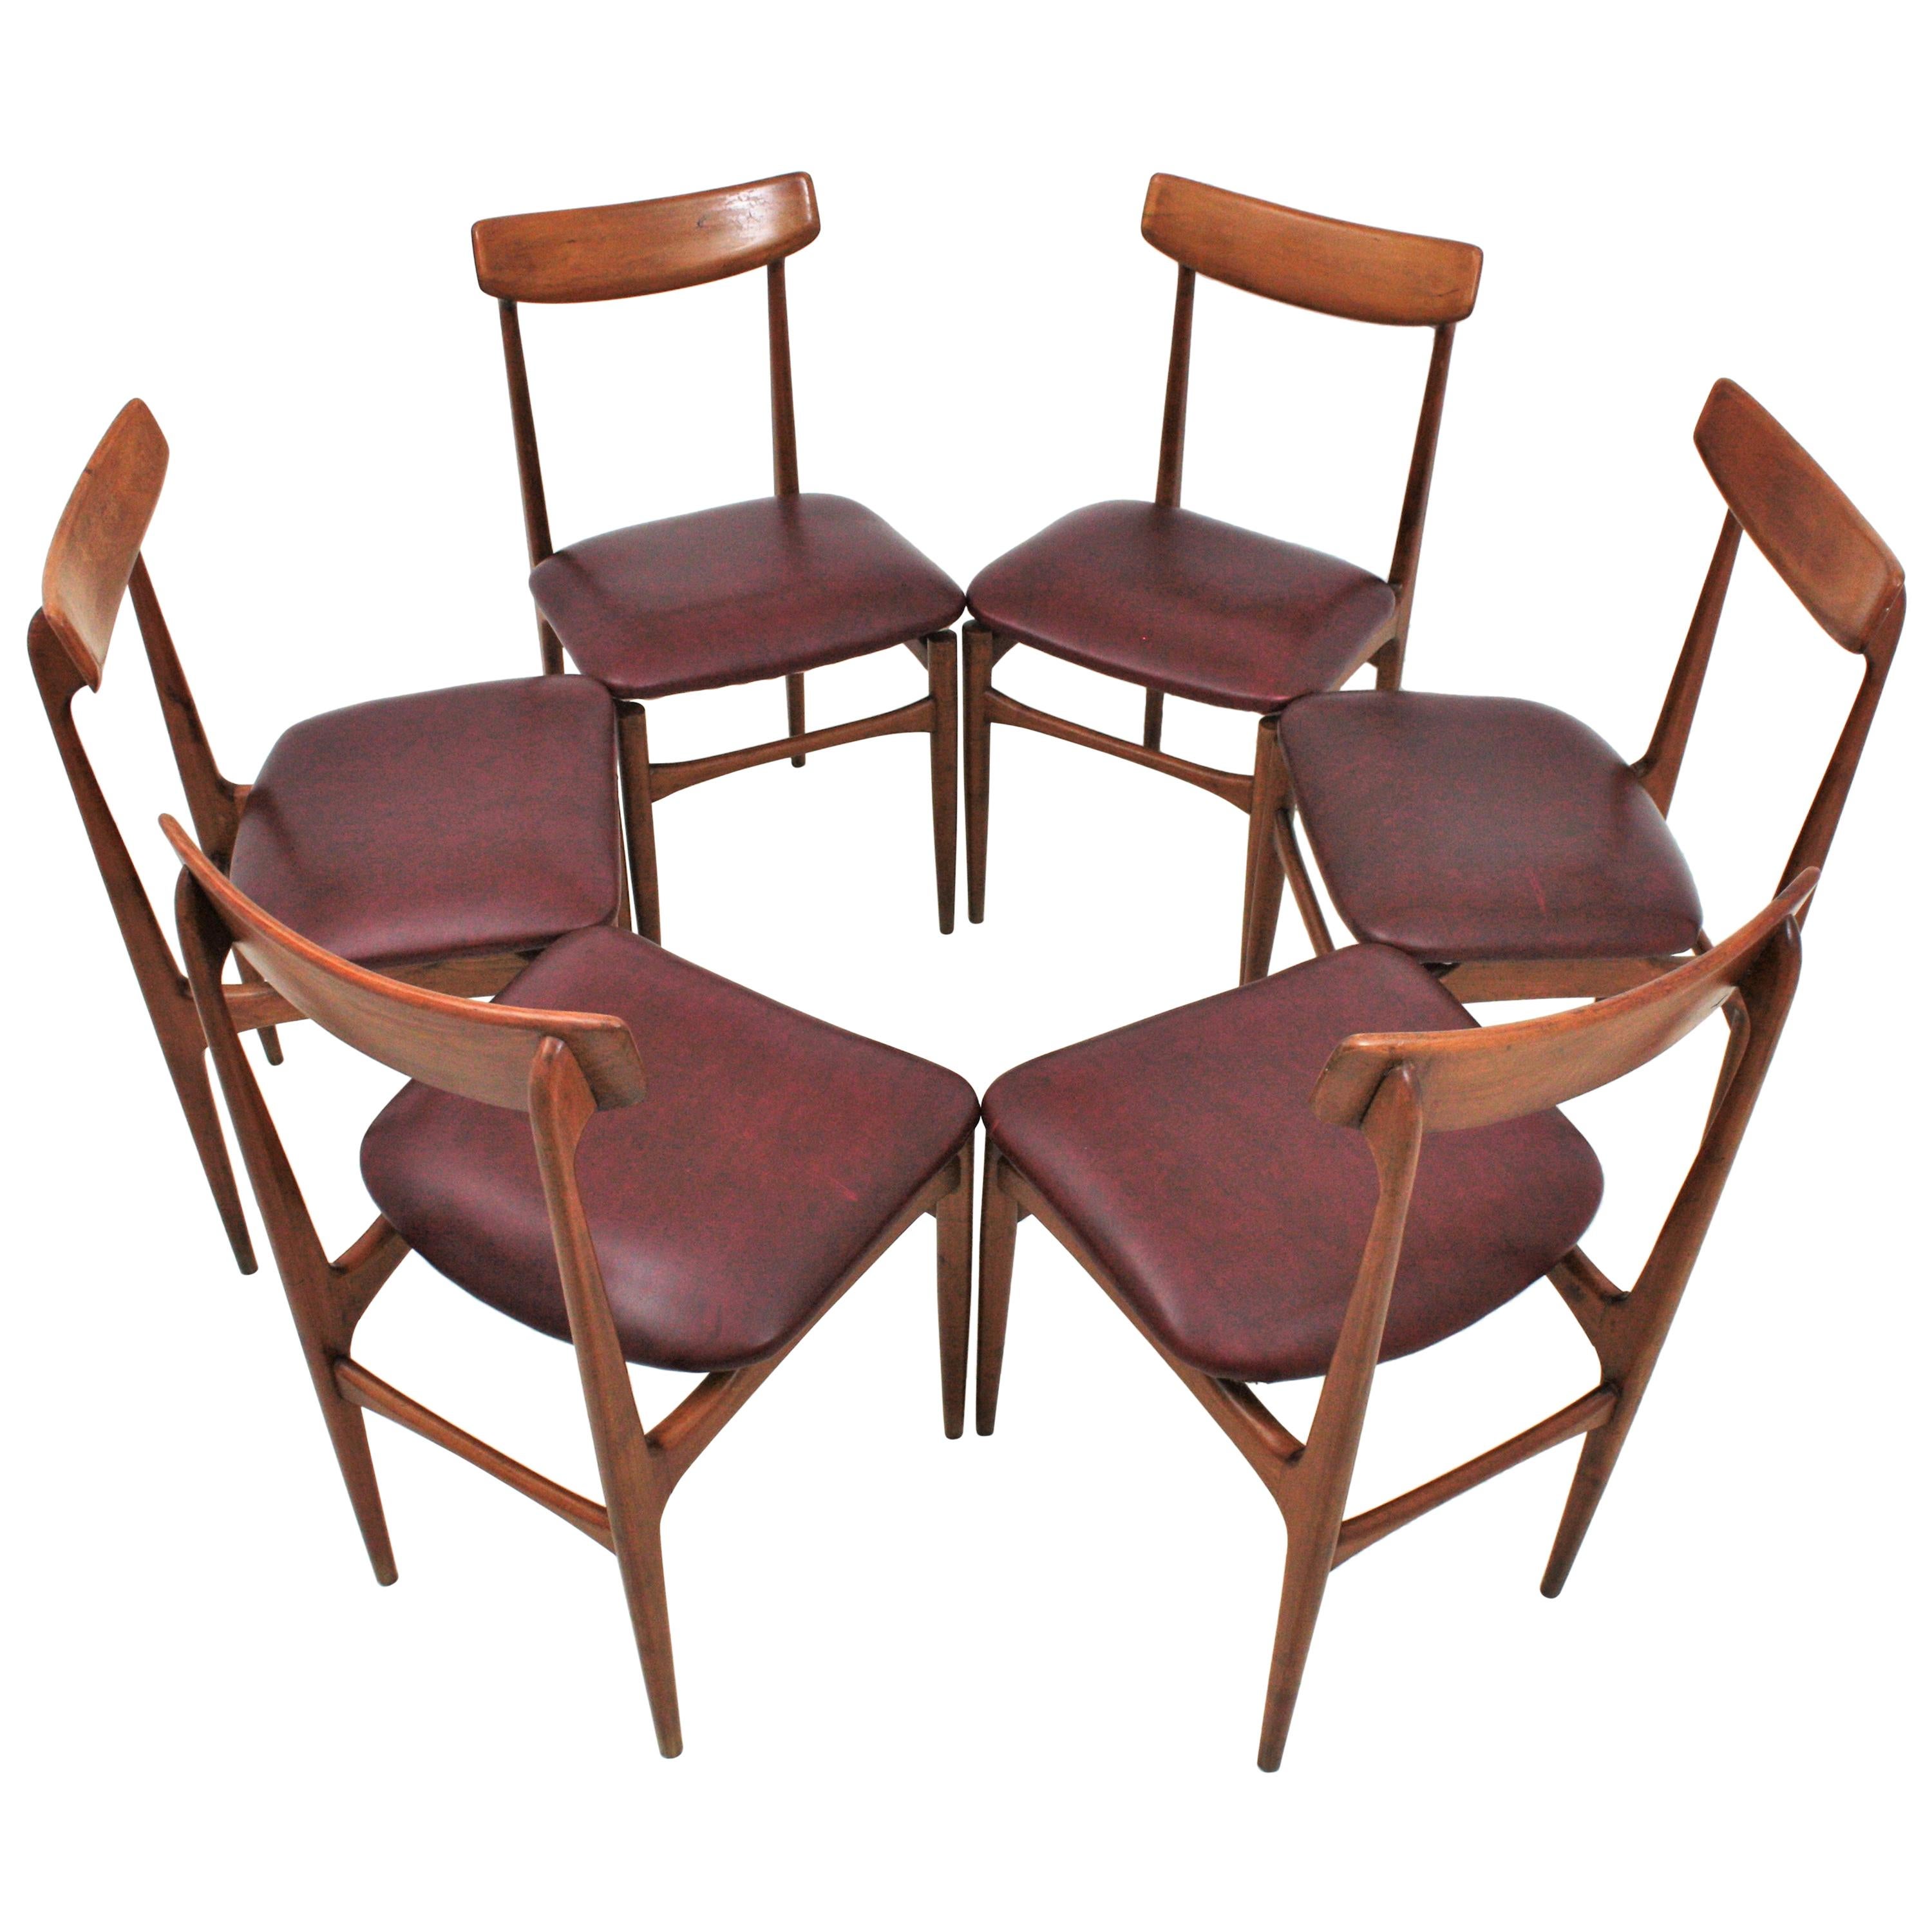 Sechs Esszimmerstühle im Stil von Helge Sibast aus Teakholz und Kunstleder, Dänemark, 1950-1960.
Schönes Modell mit großer Teakholzlehne und Teakholzrahmen. Diese eleganten Esszimmerstühle haben ein Design mit klaren Linien, zylindrischen Beinen